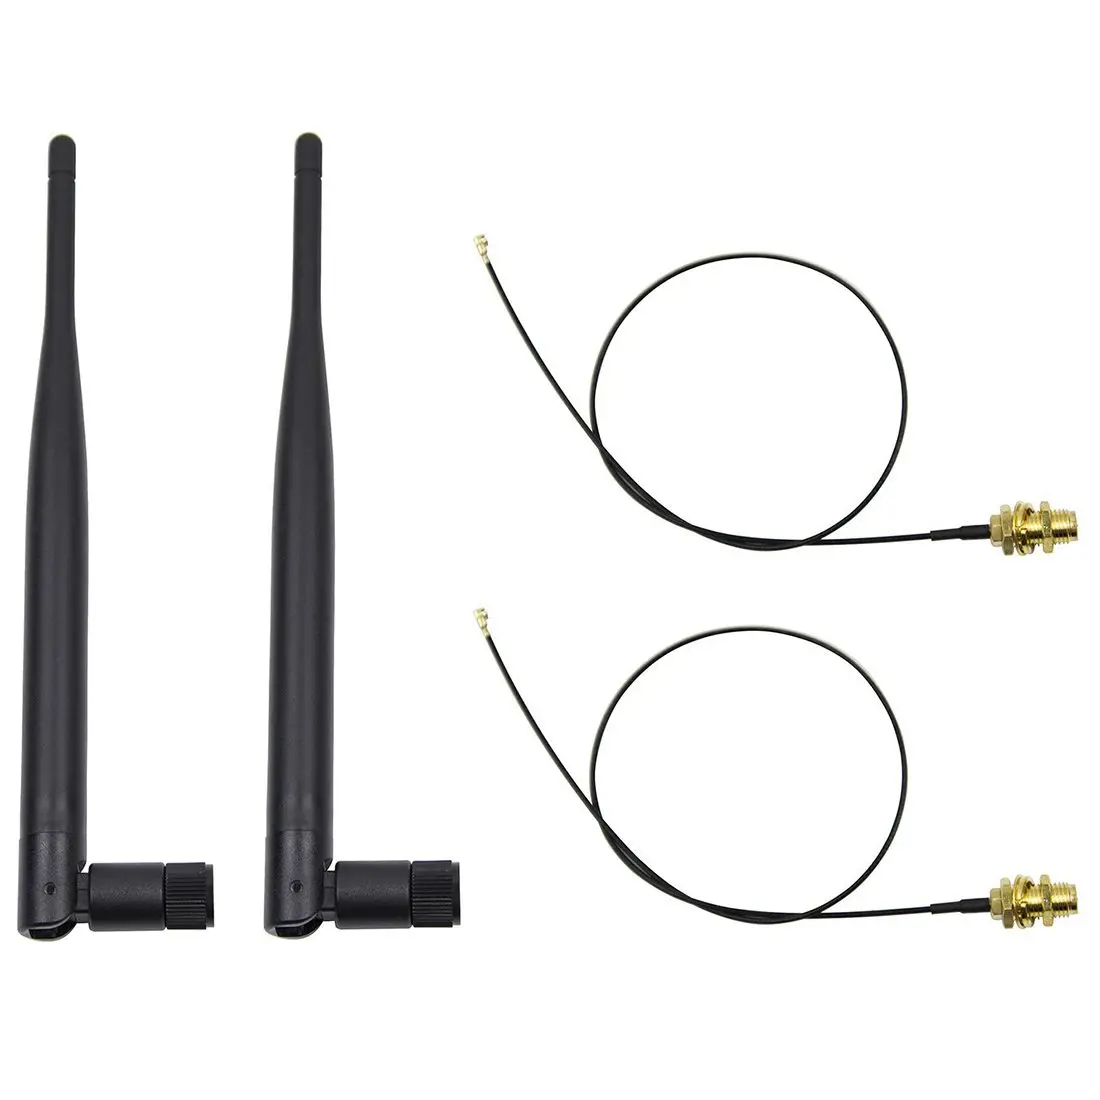 TTKK 2 x 6dBi 2,4 ГГц 5 ГГц Двухдиапазонная WiFi RP-SMA антенна+ 2x35 см U. fl/кабель IPEX